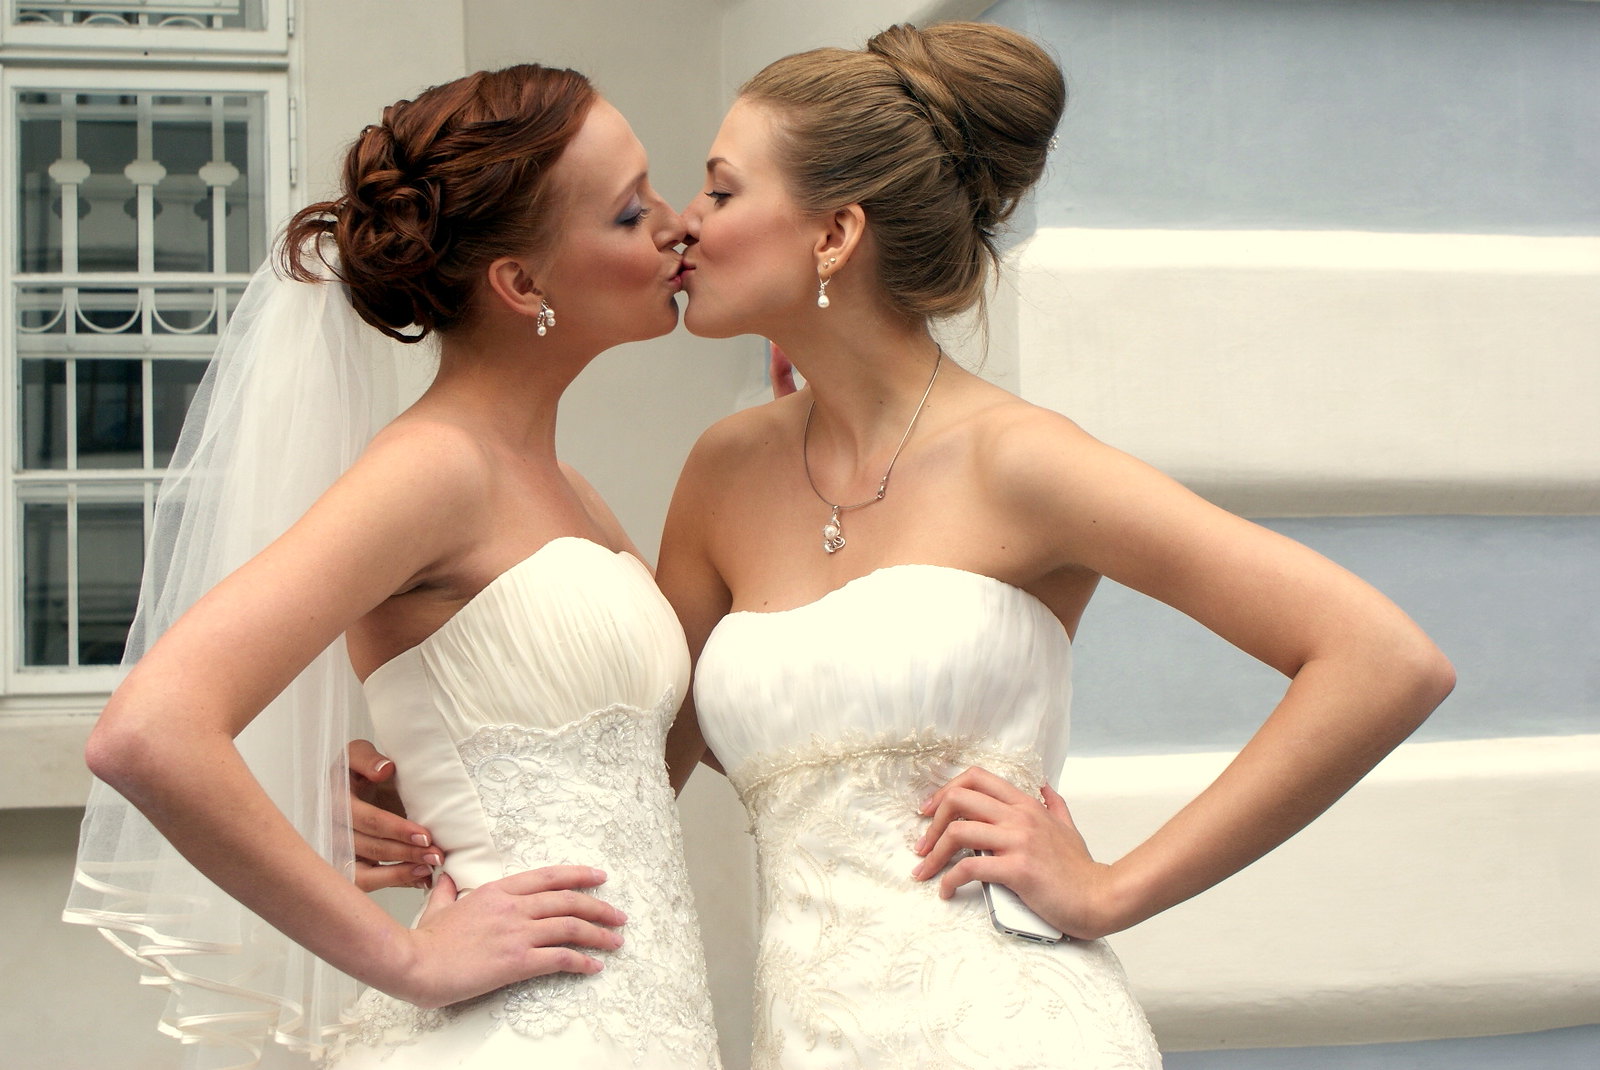 Lesbians many. Две девушки в свадебных платьях. Две невесты красивые. Свадебные платья для двух невест. Свадебное платье свадьба двух девушек.